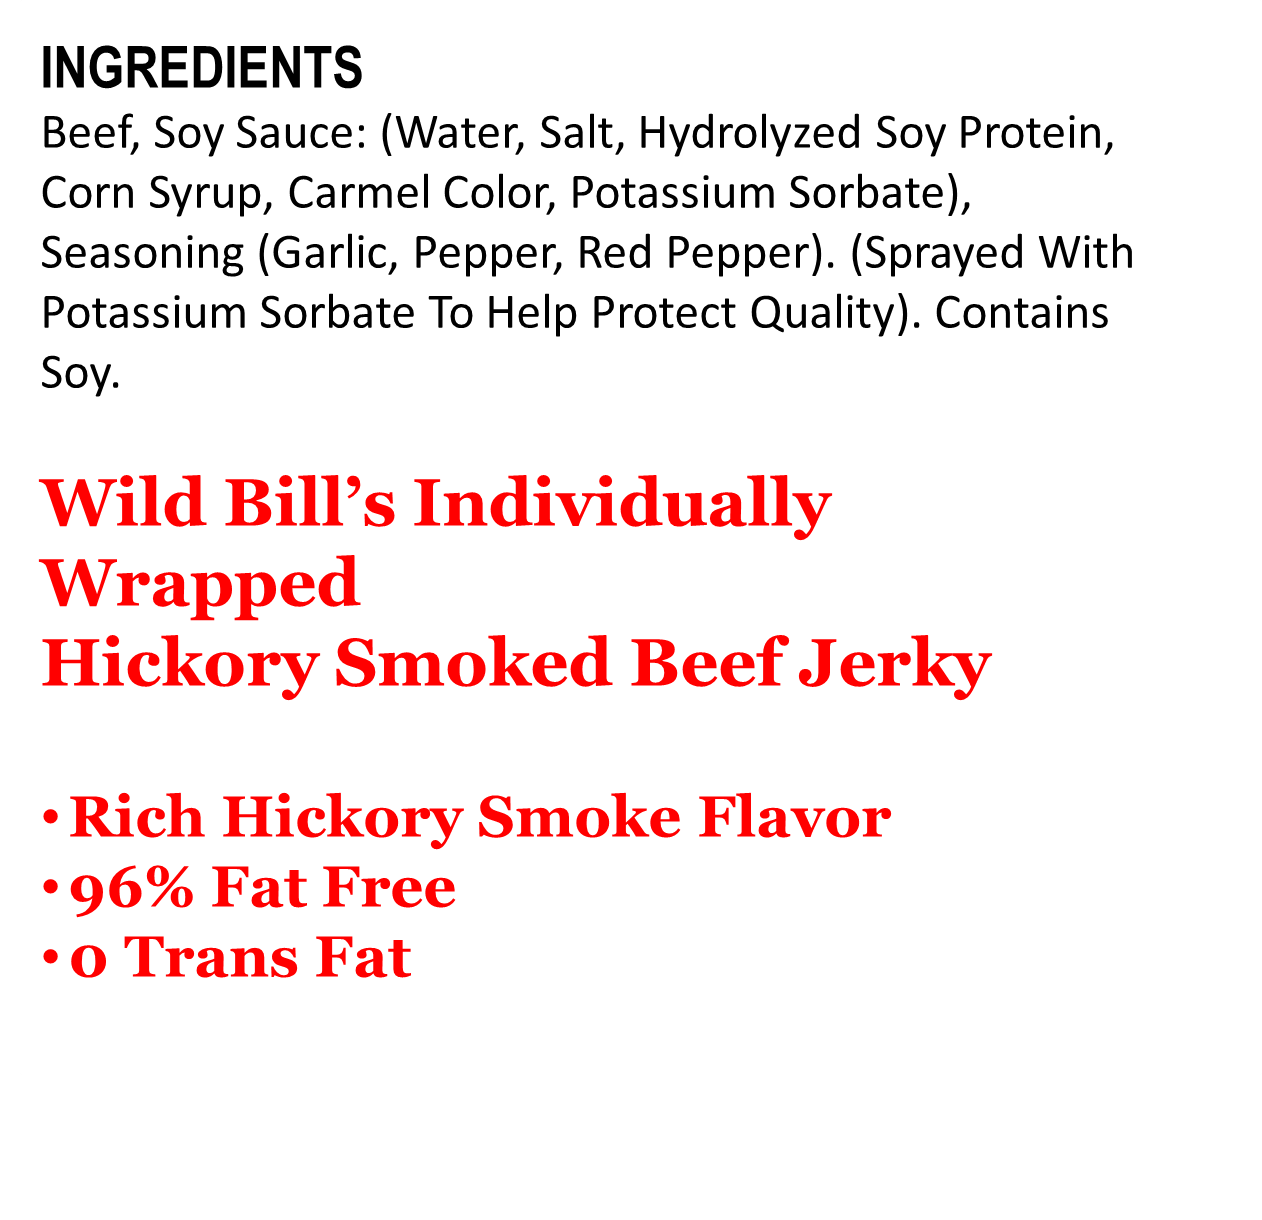 1 oz Ham & Cheese Sticks Ingredients